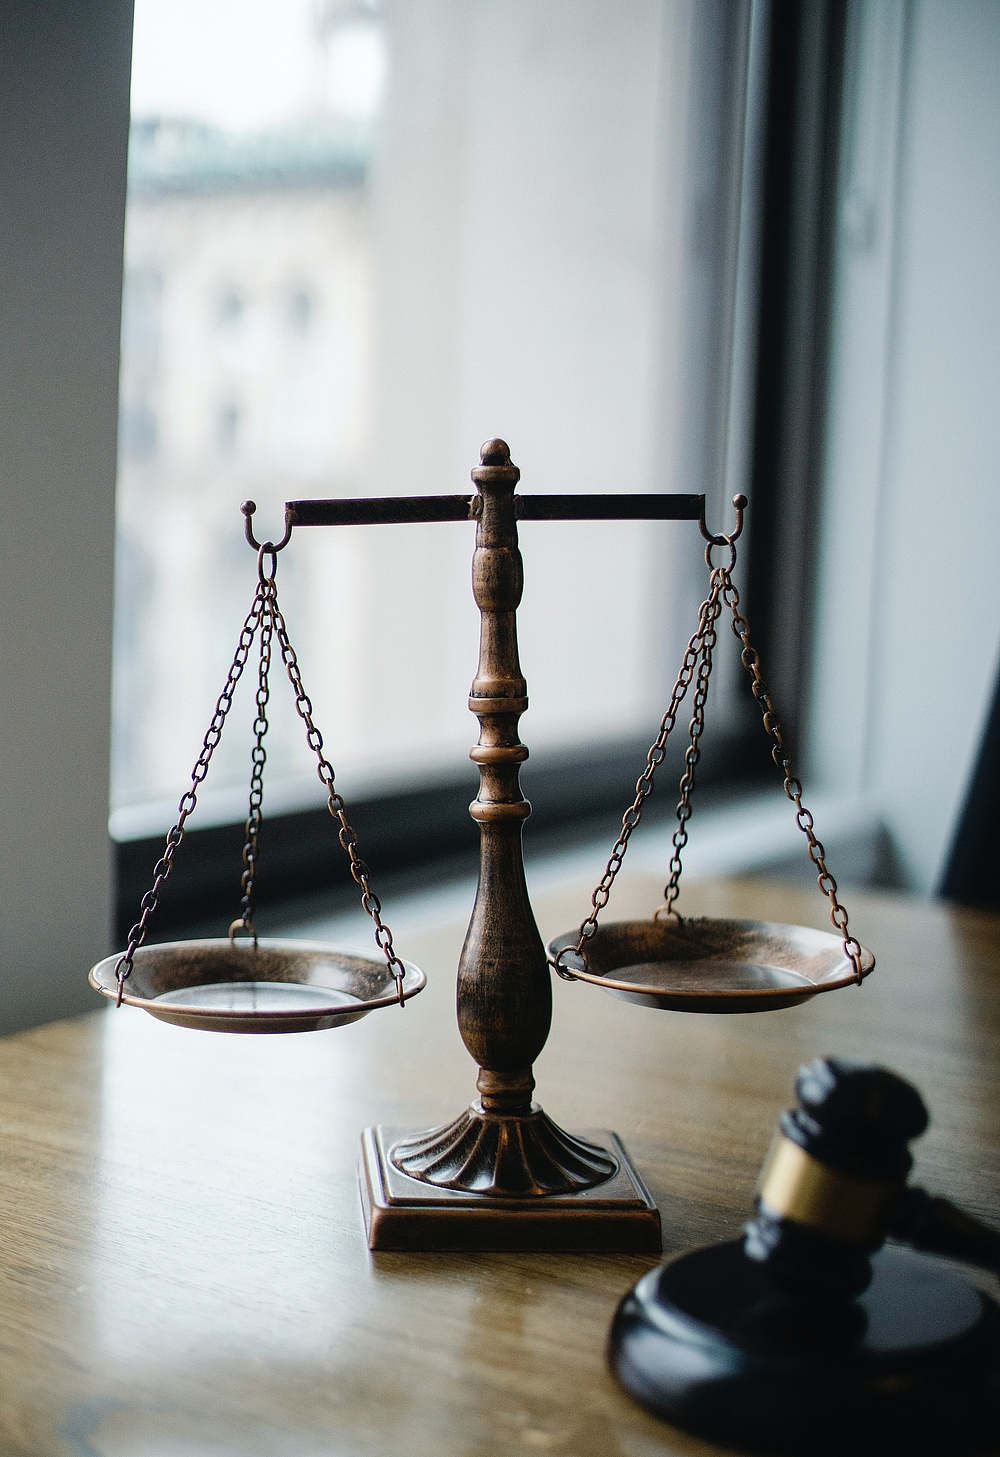 Urteilsskala (Waage) und Hammer im Richteramt als Zeichen der Gleichbehandlung der Fälle